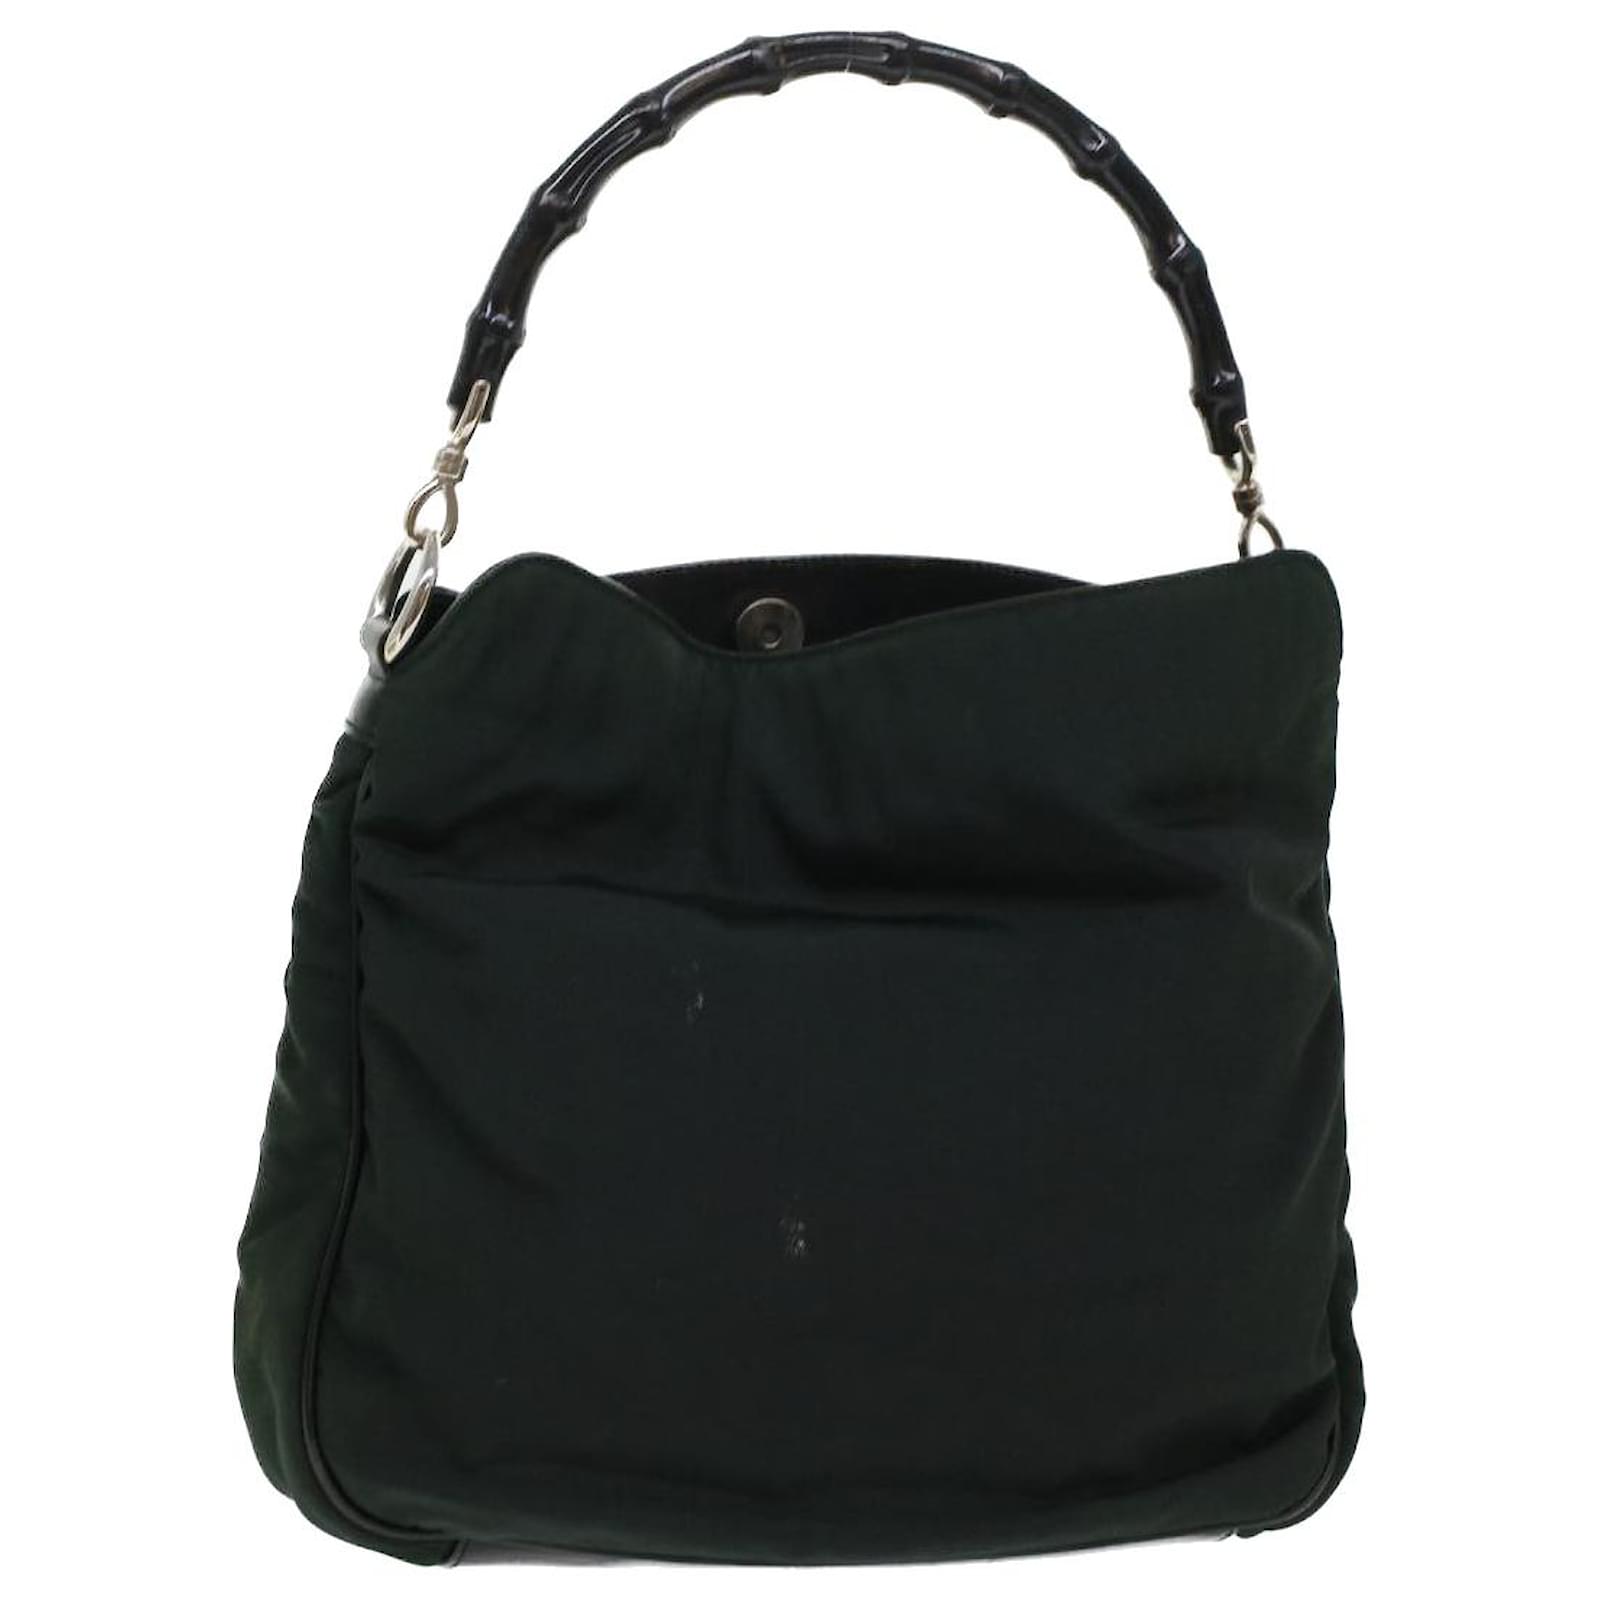 Gucci, Bags, Green Gucci Bamboo Shoulder Bag